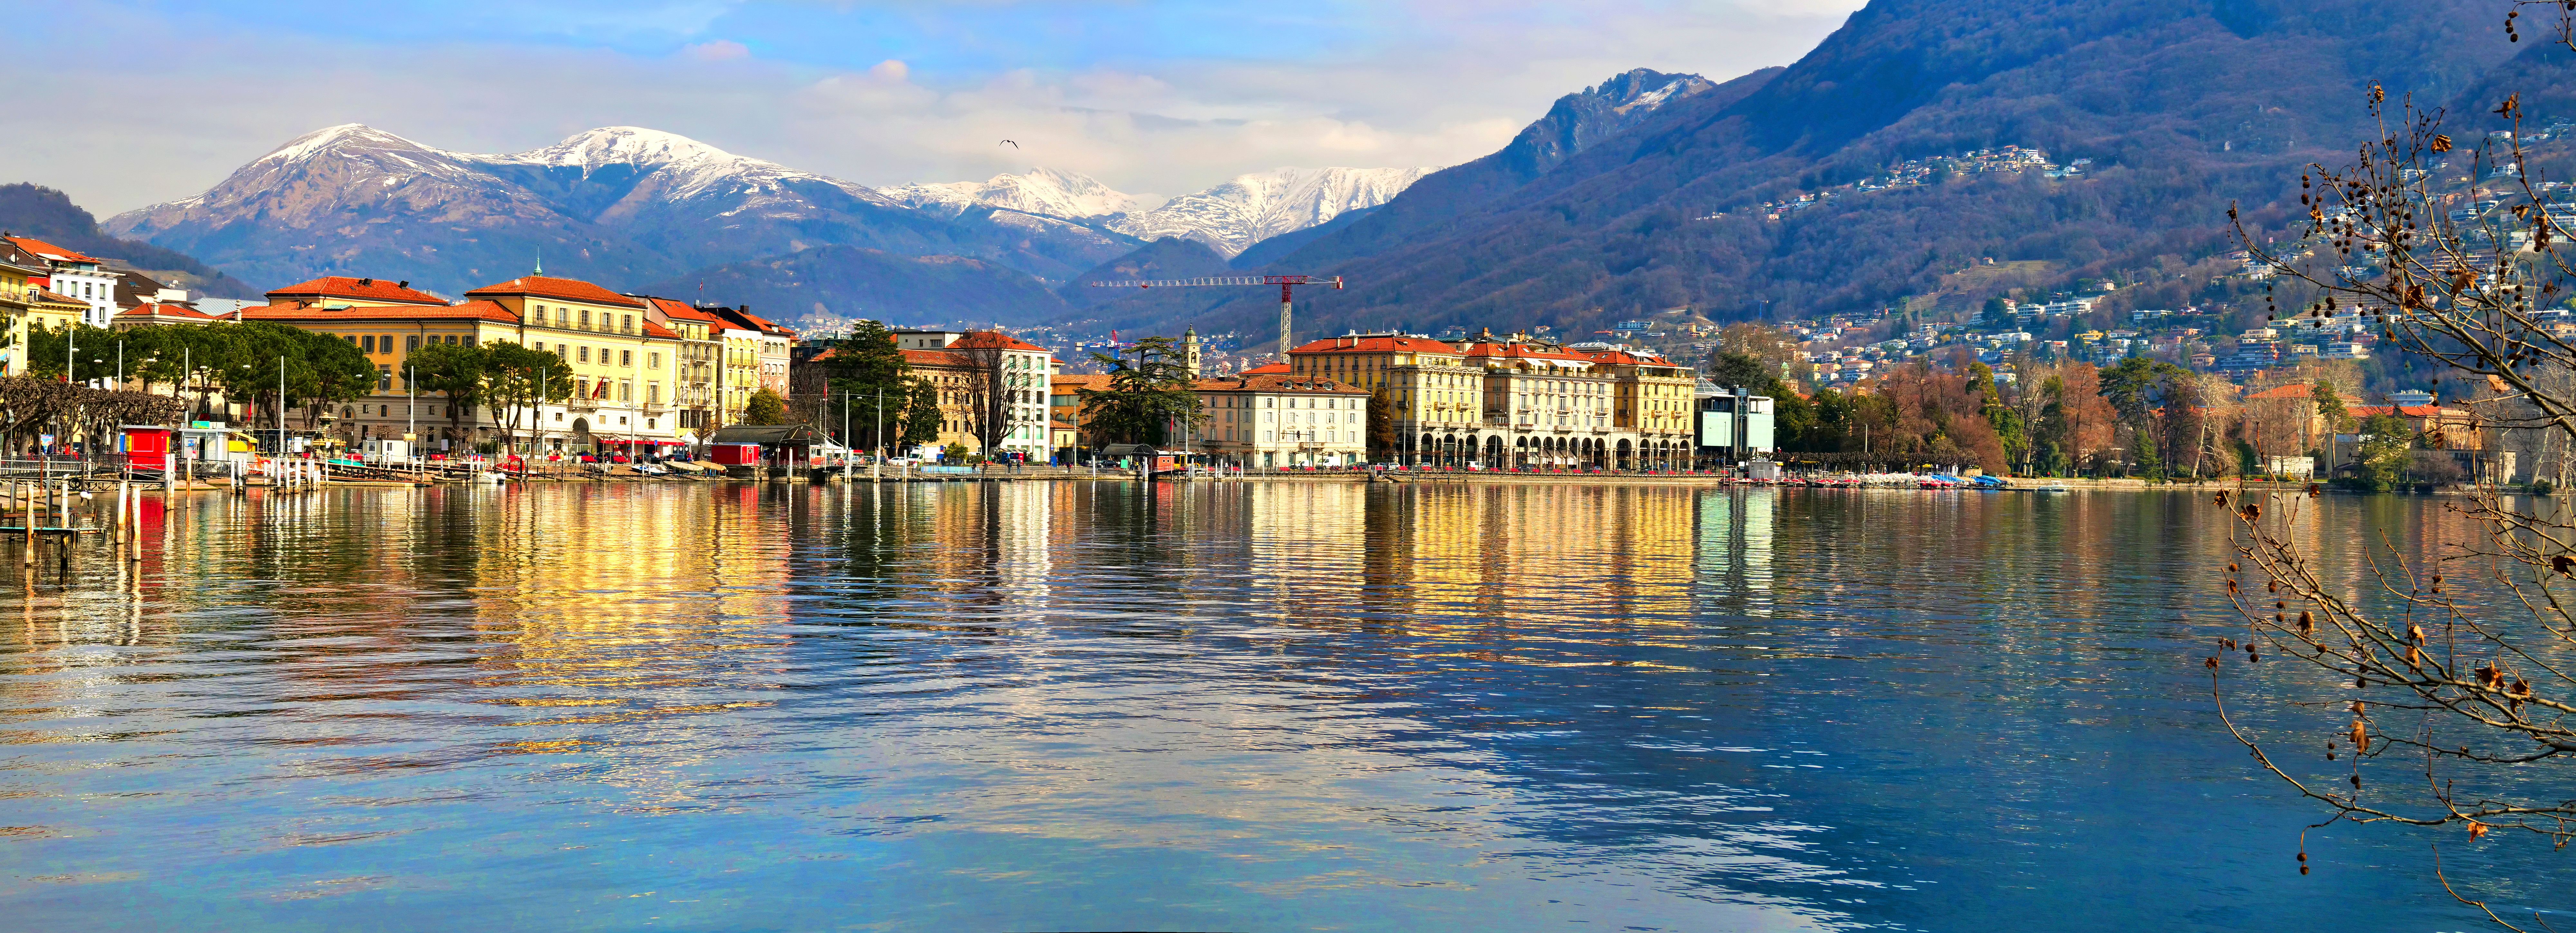 Lugano im italienischsprachigen Kanton Tessin © EHK-Pictures